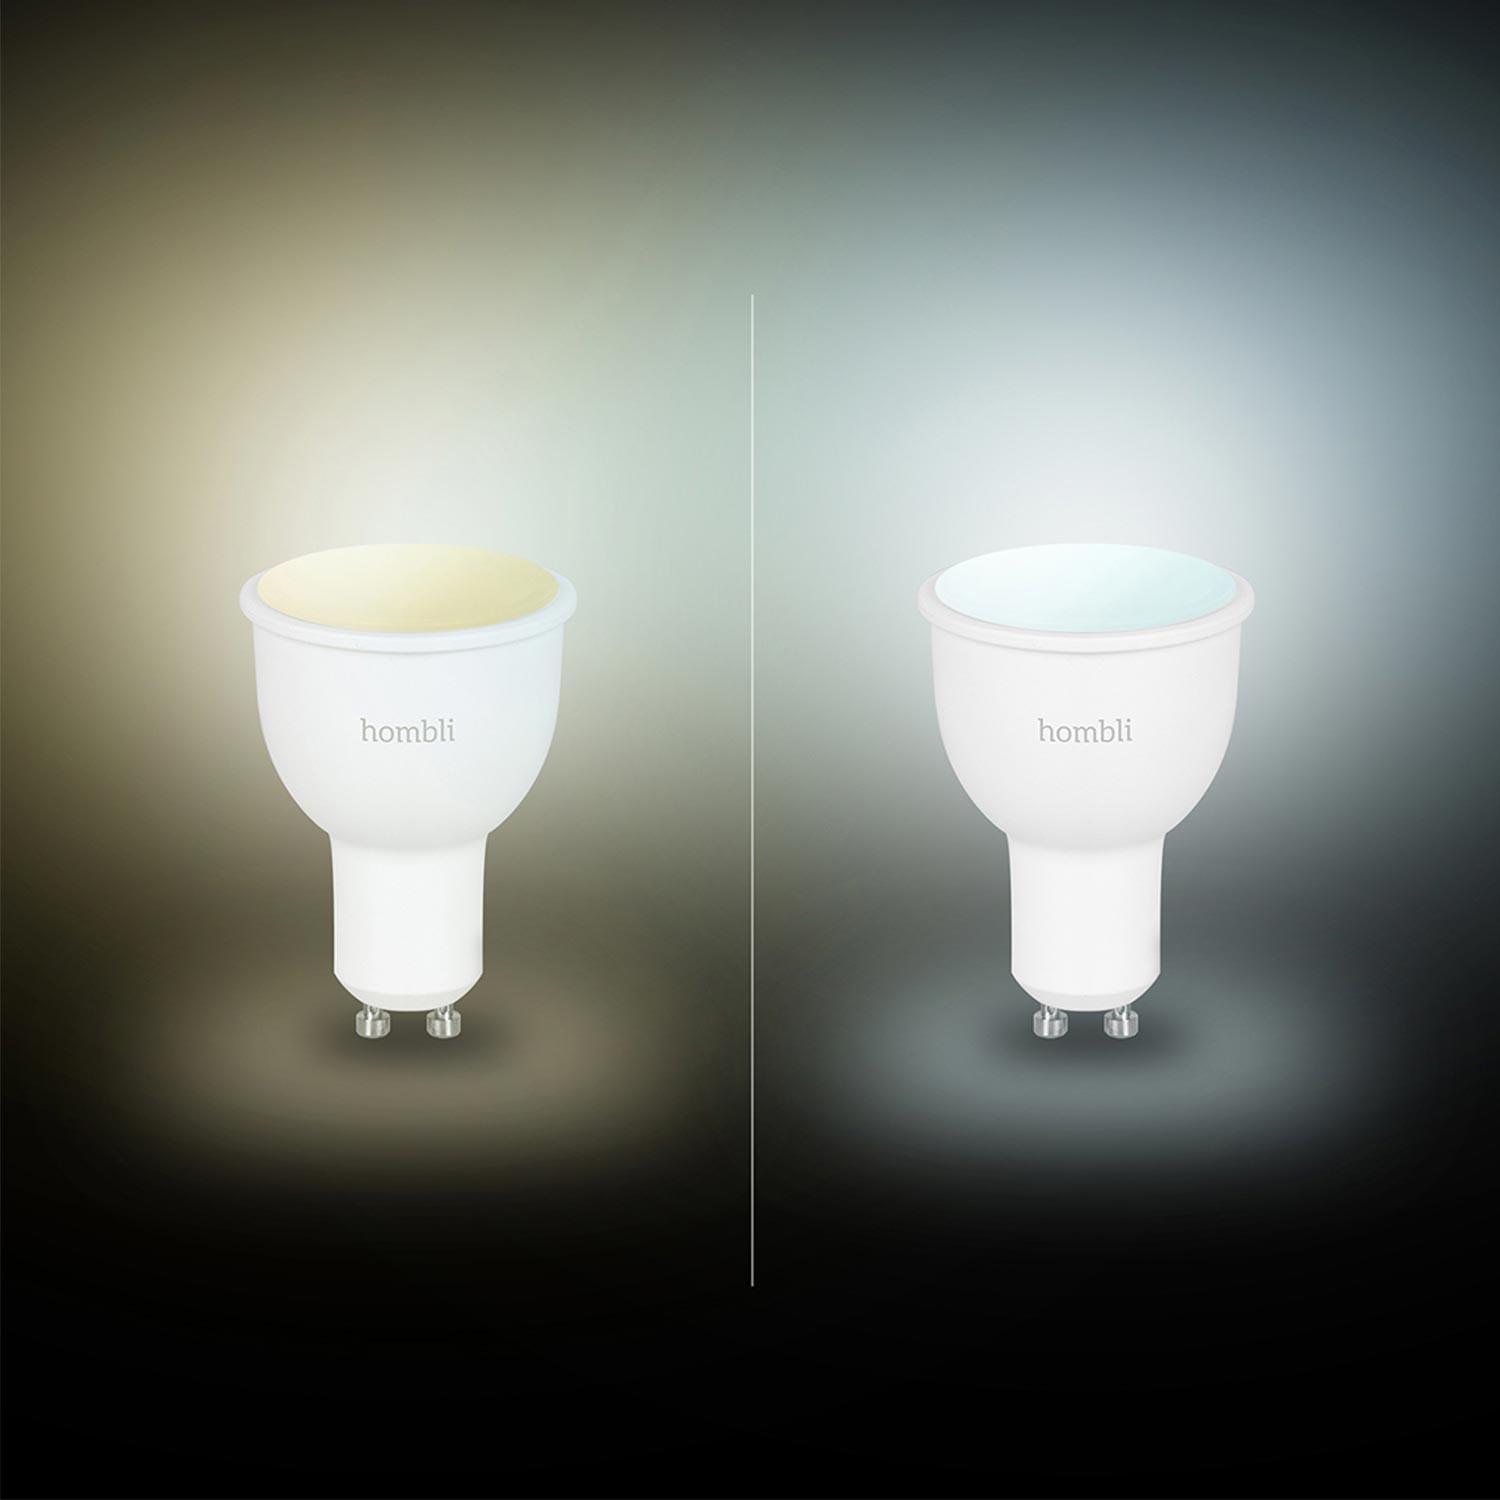 Hombli Smart Spot GU10 White-Lampe 2er-Set + gratis Smart Spot GU10 White 2er-Set - Ambient